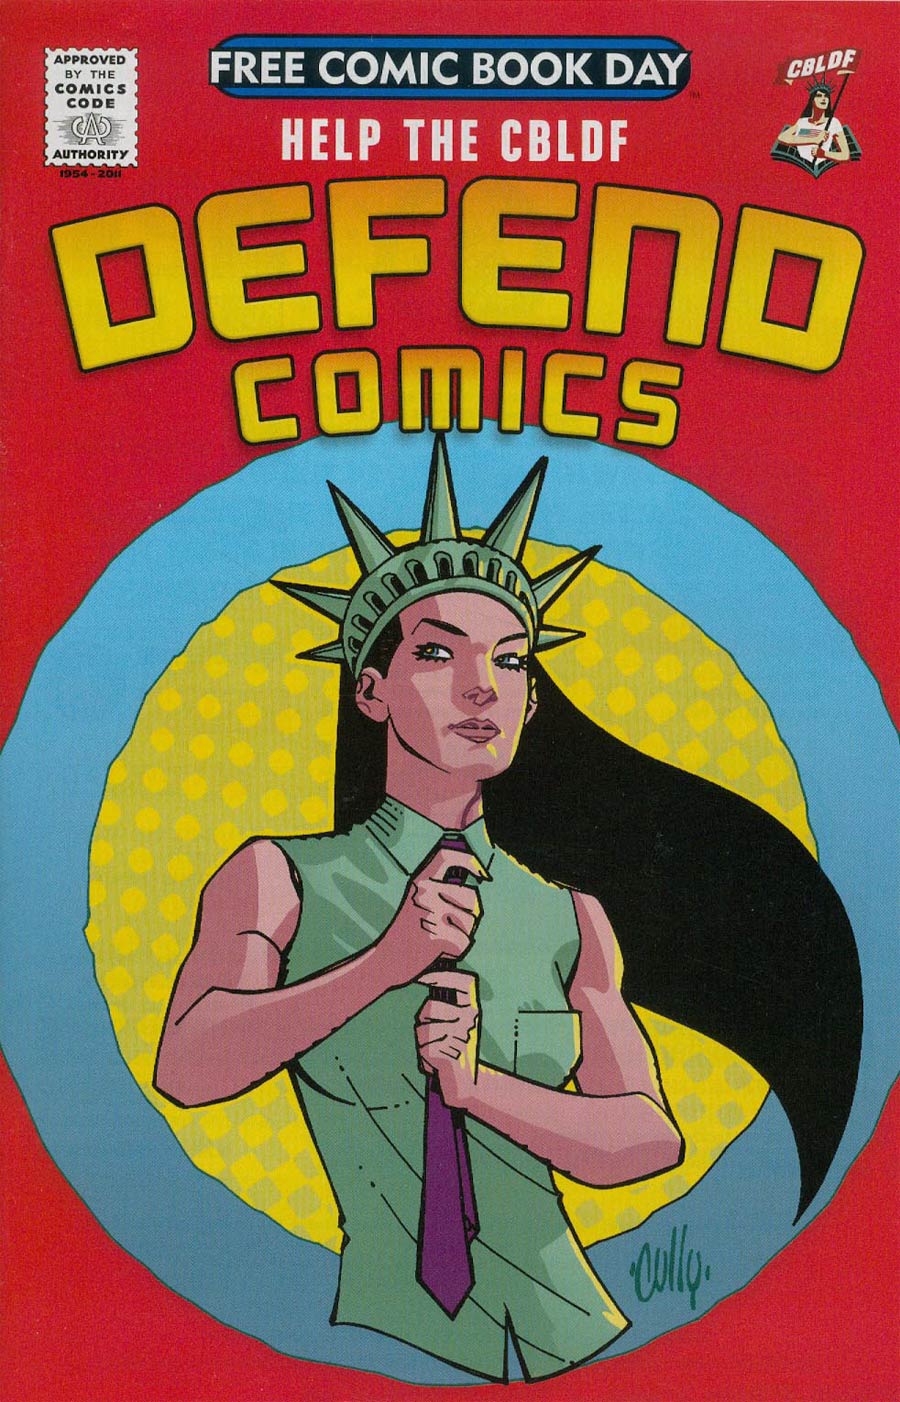 FCBD 2014 Defend Comics